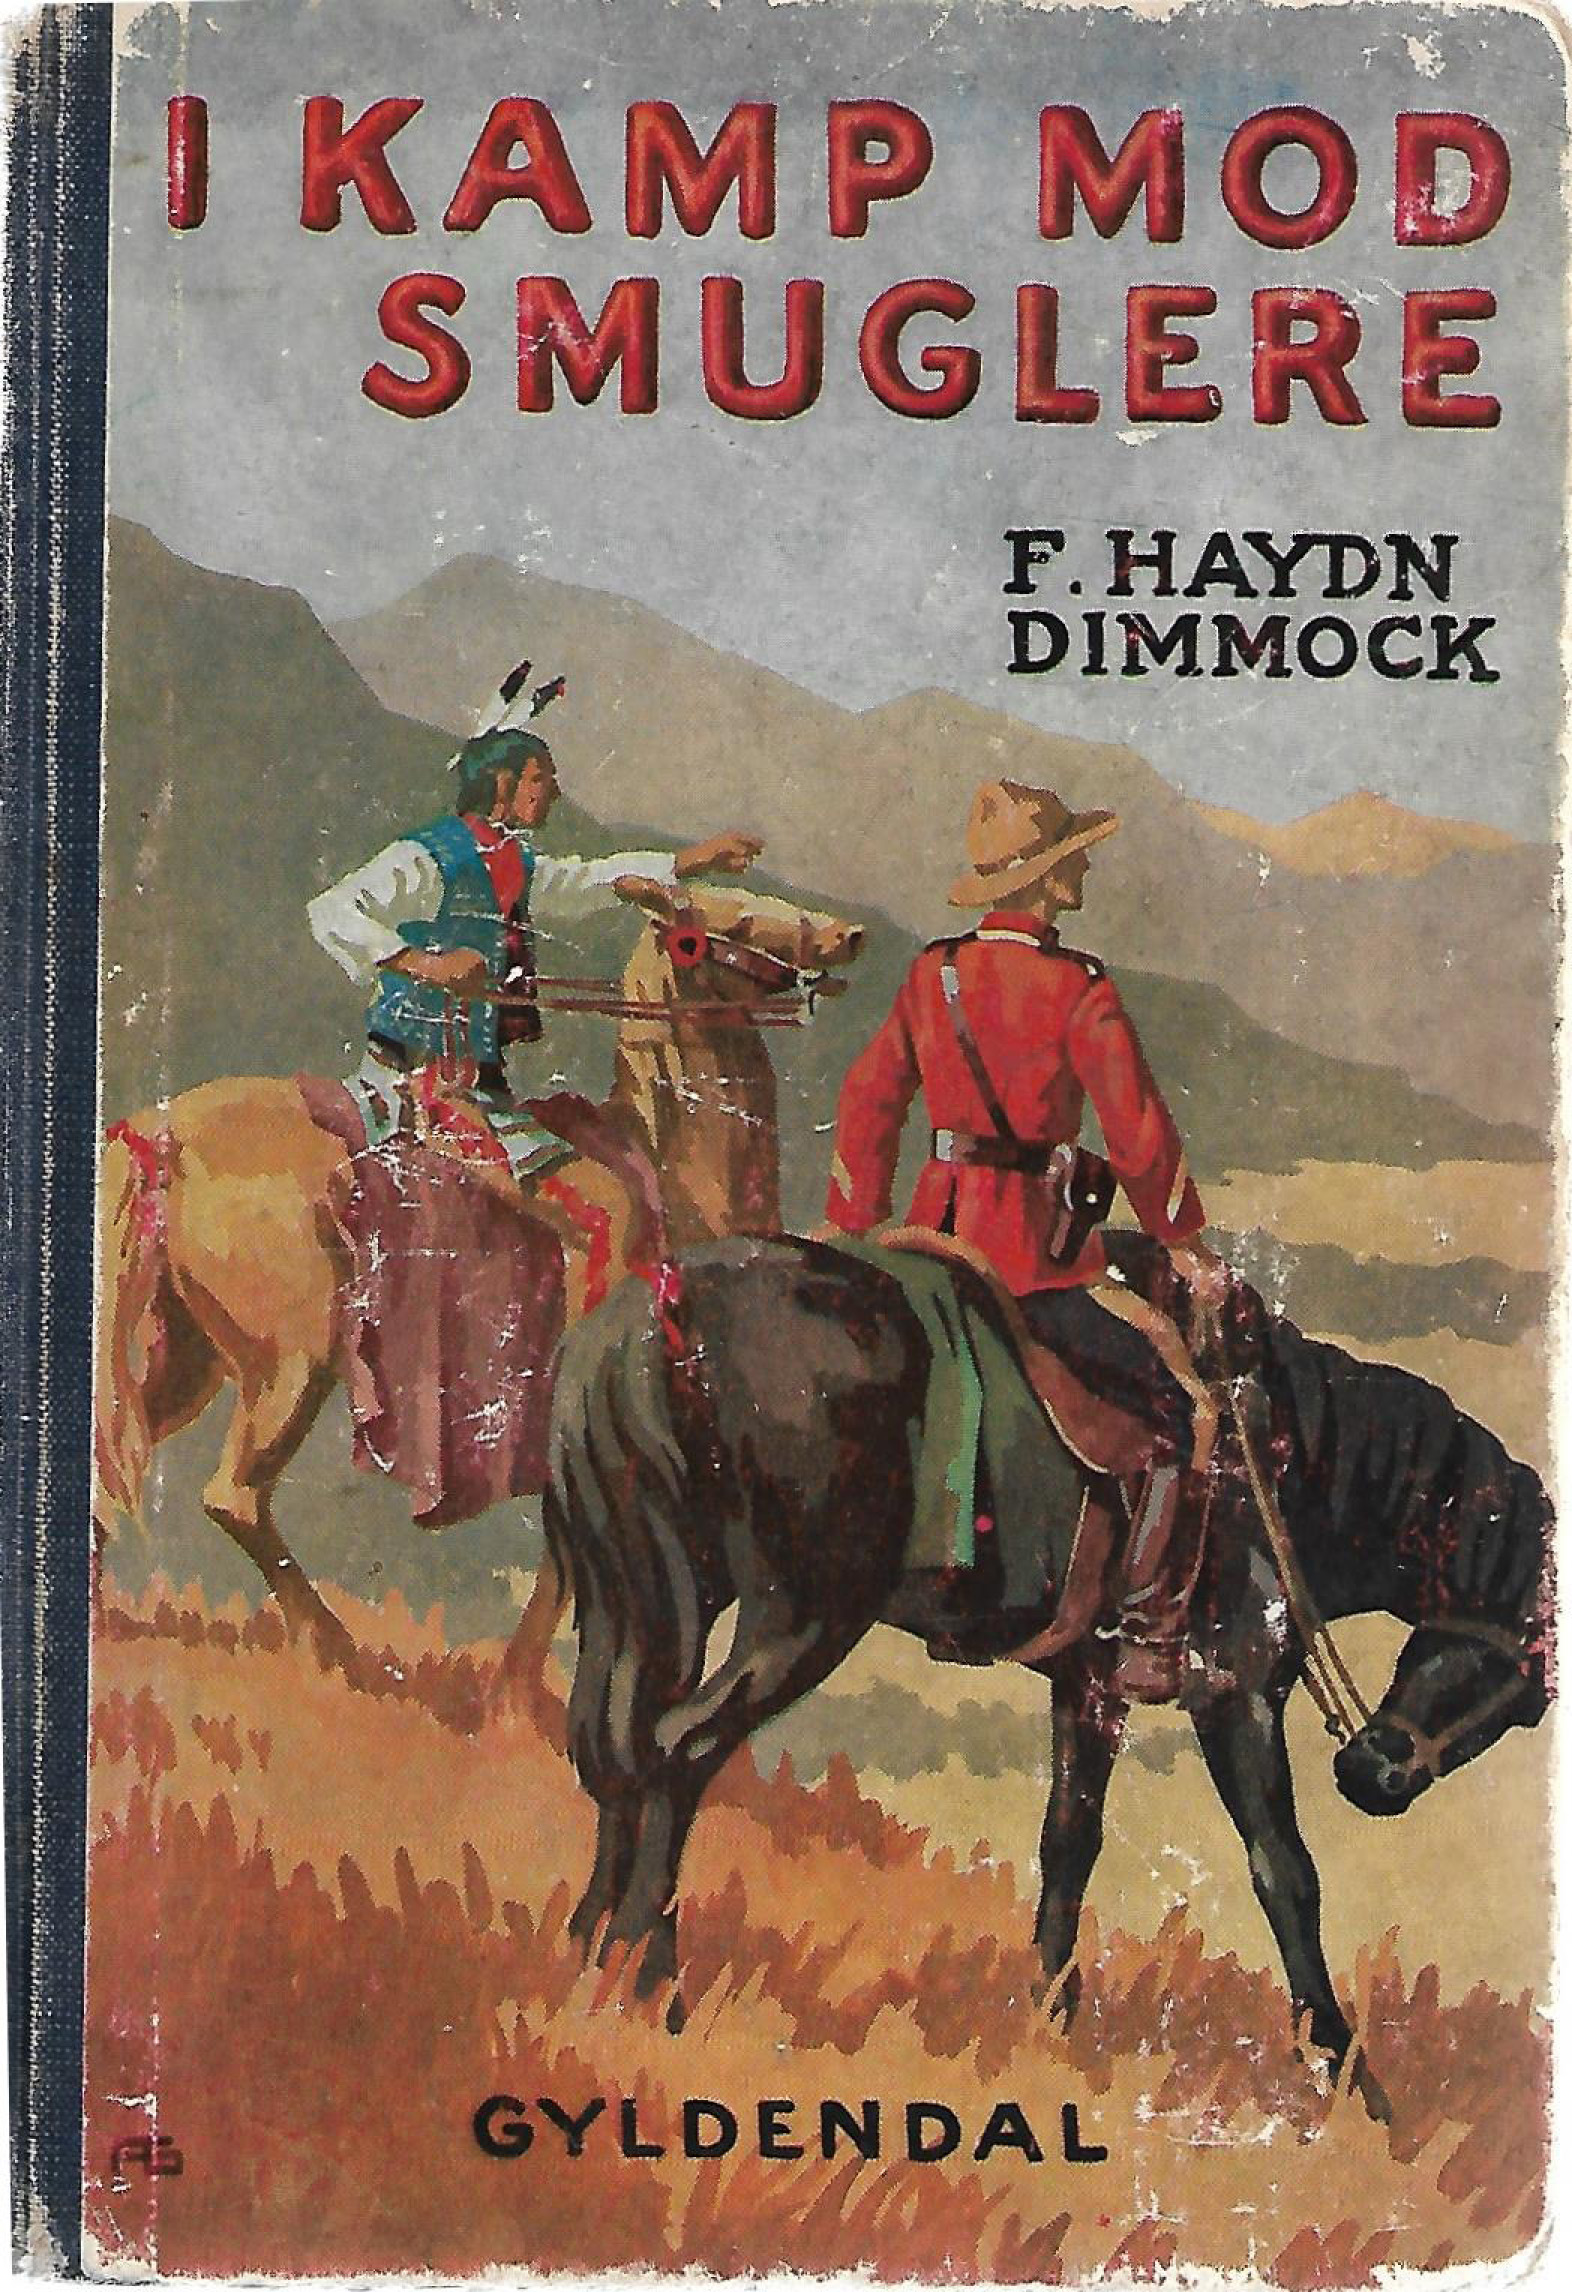 I kamp mod smuglere - F Haydn Dimmock-1